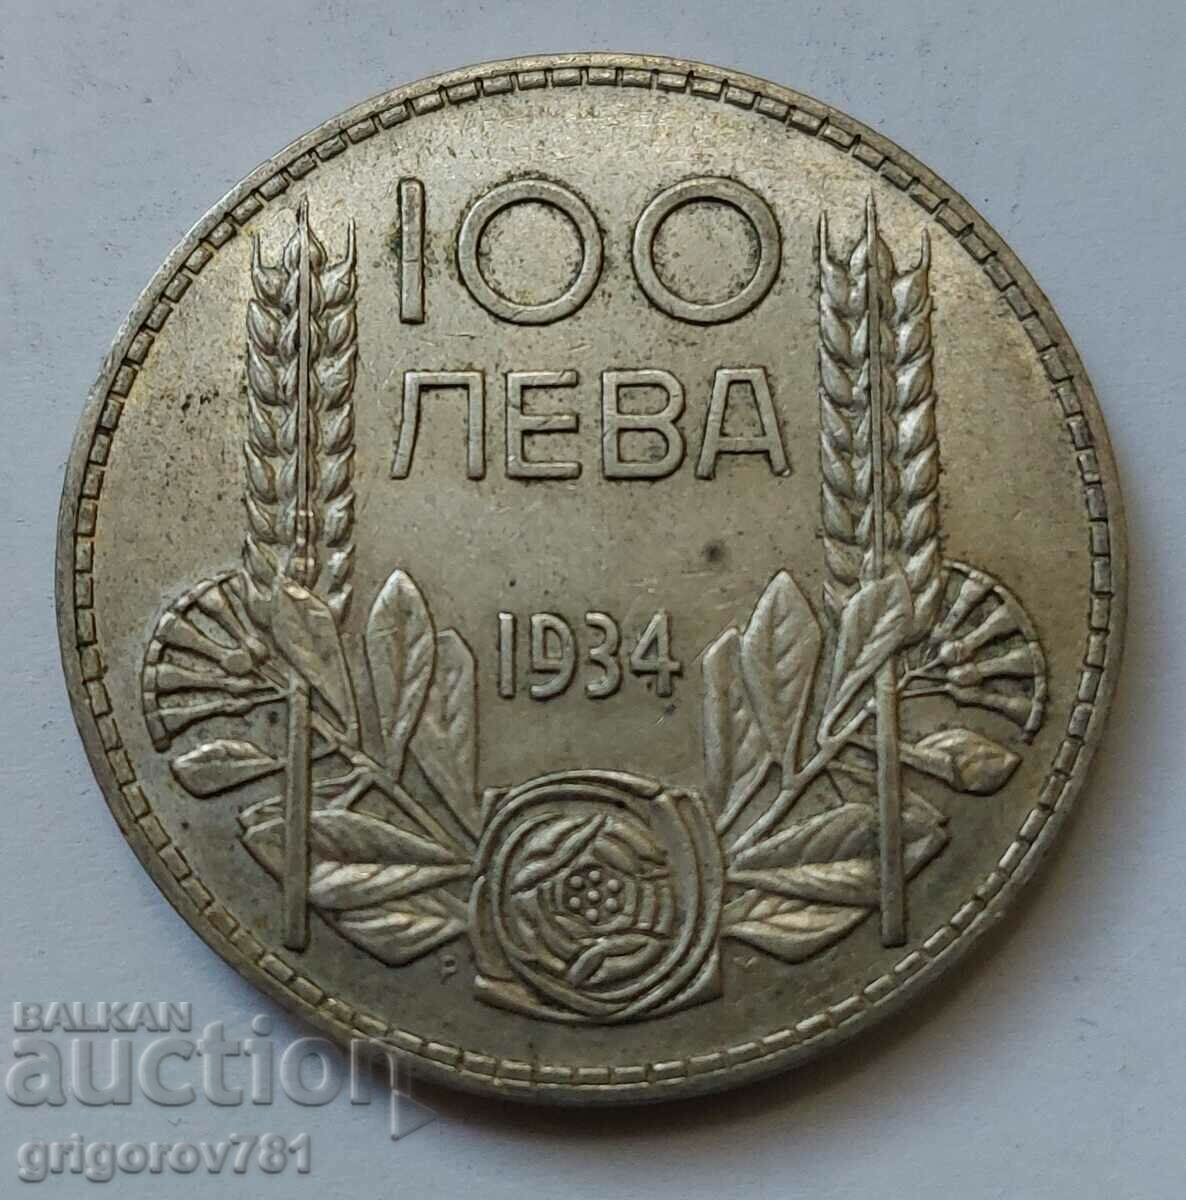 100 leva silver Bulgaria 1934 - silver coin #101